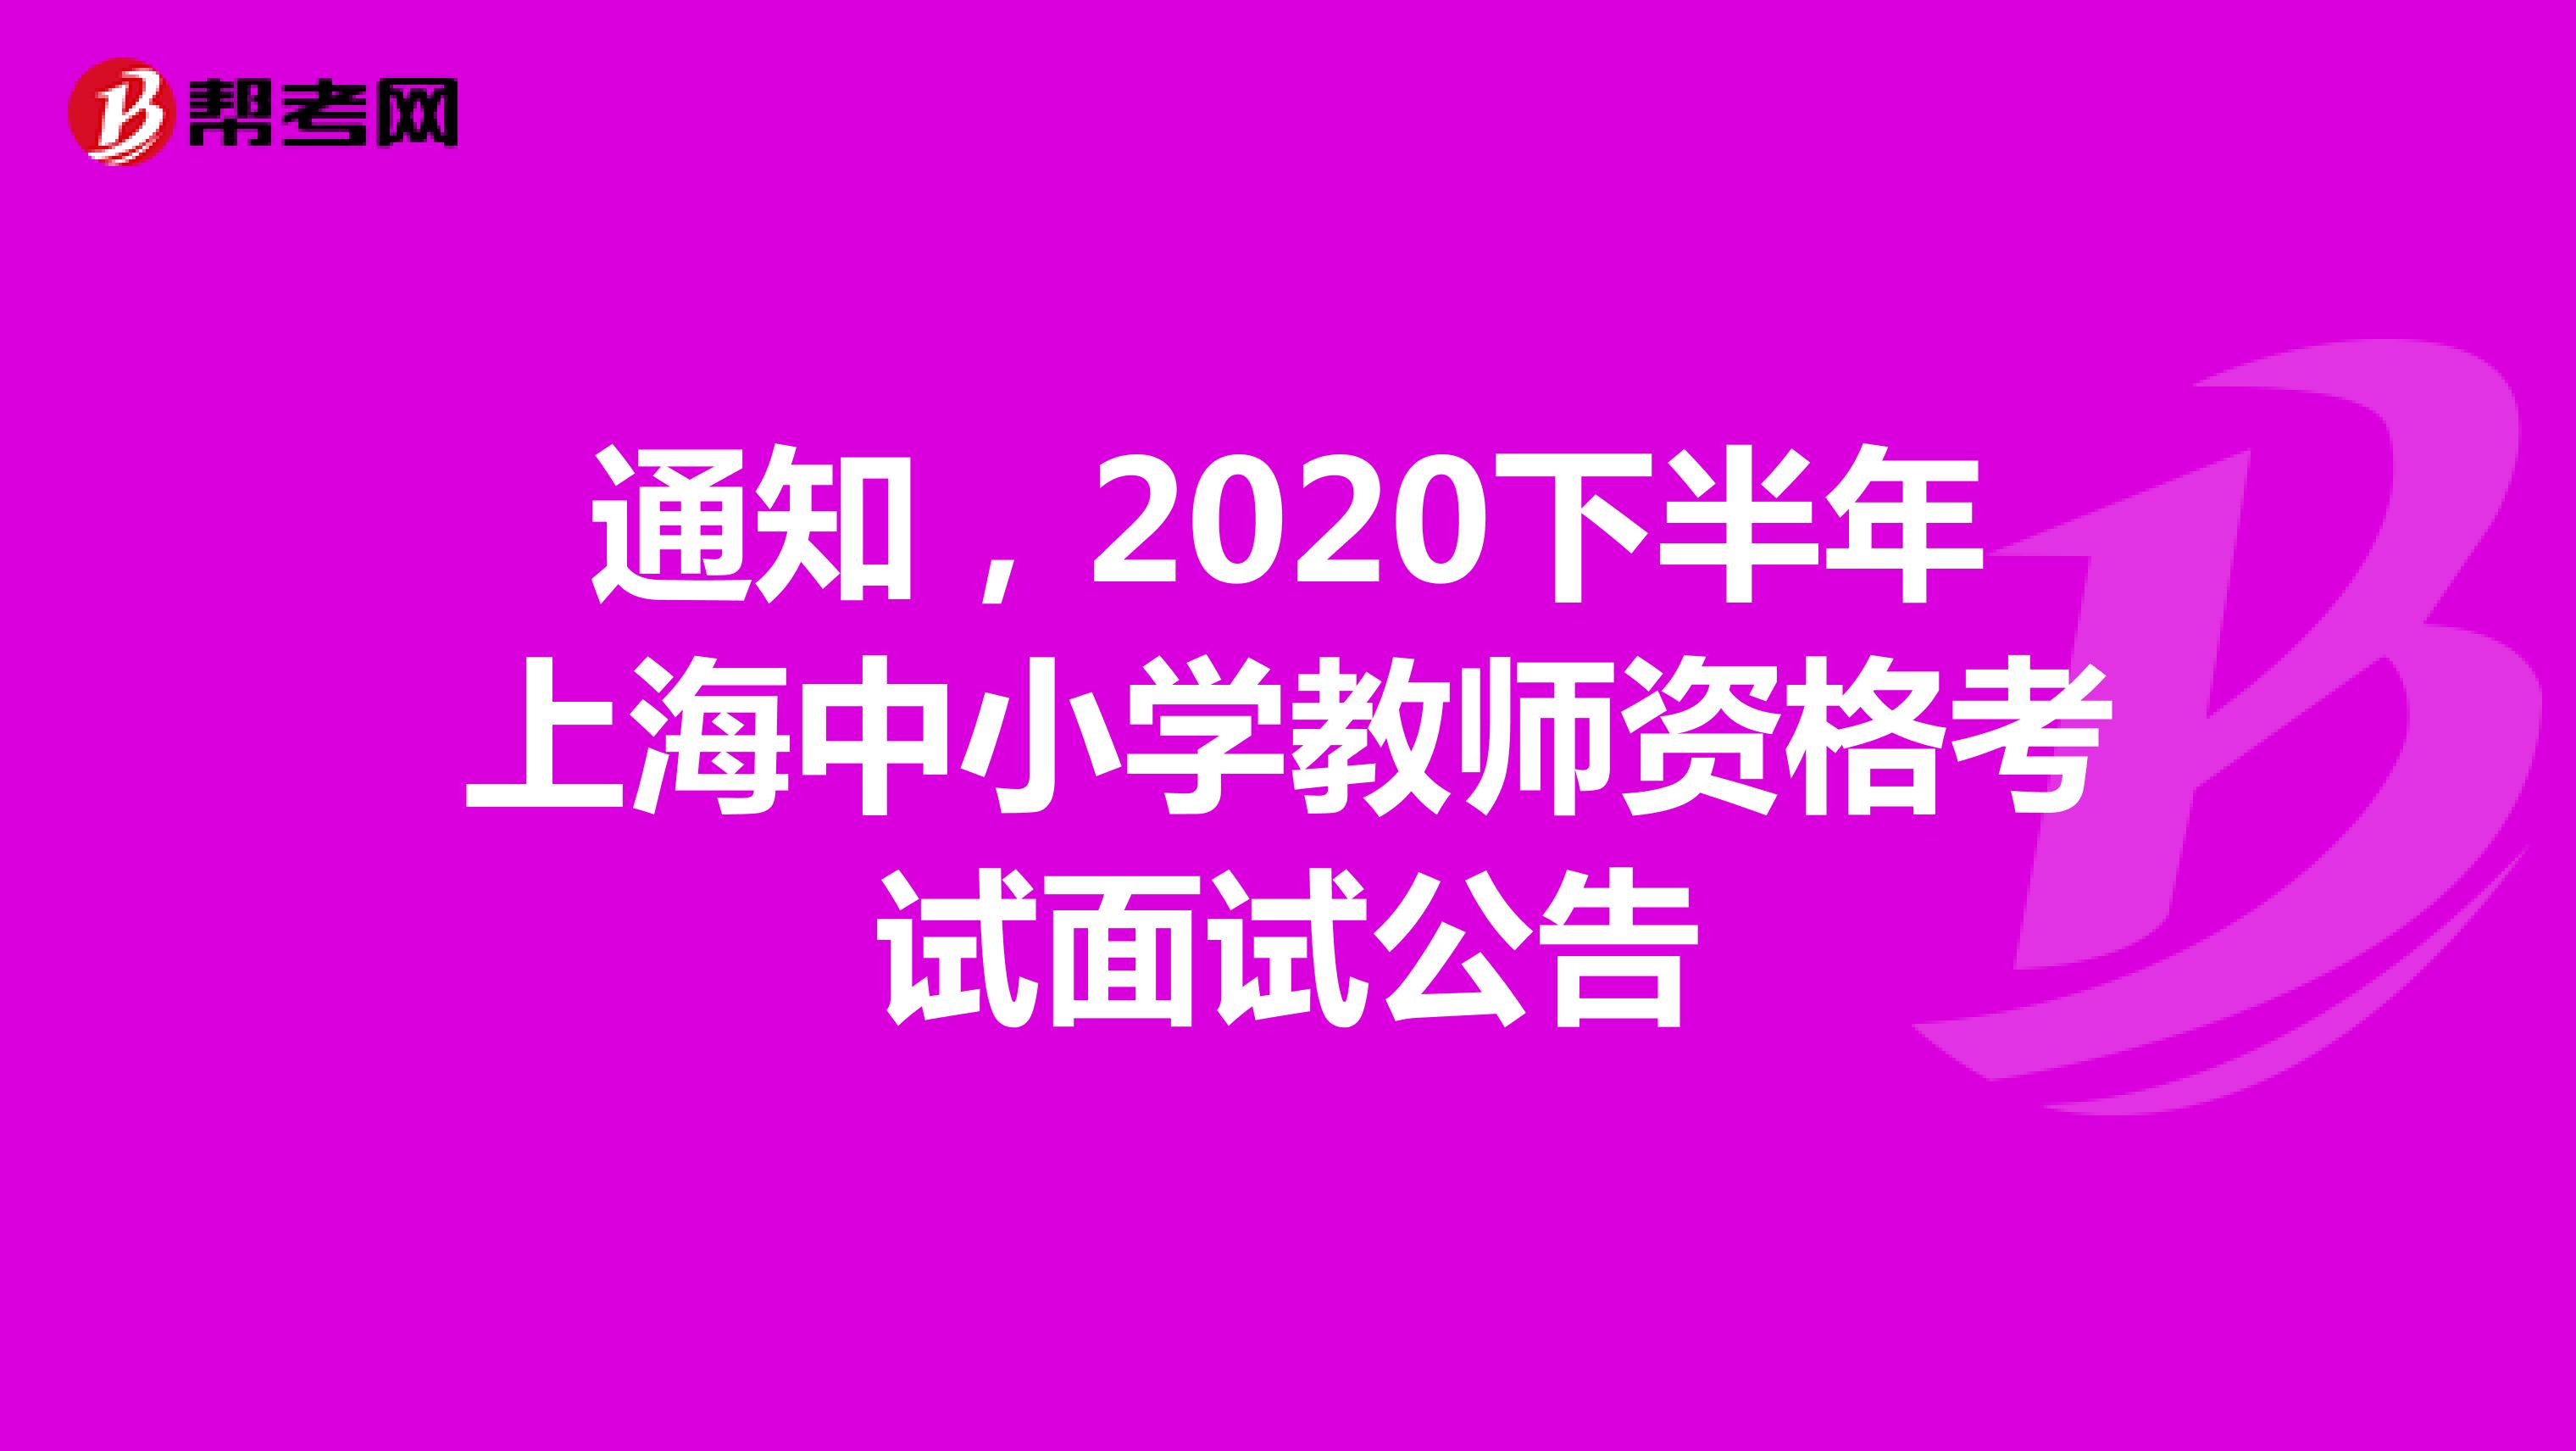 通知，2020下半年上海中小学教师资格考试面试公告